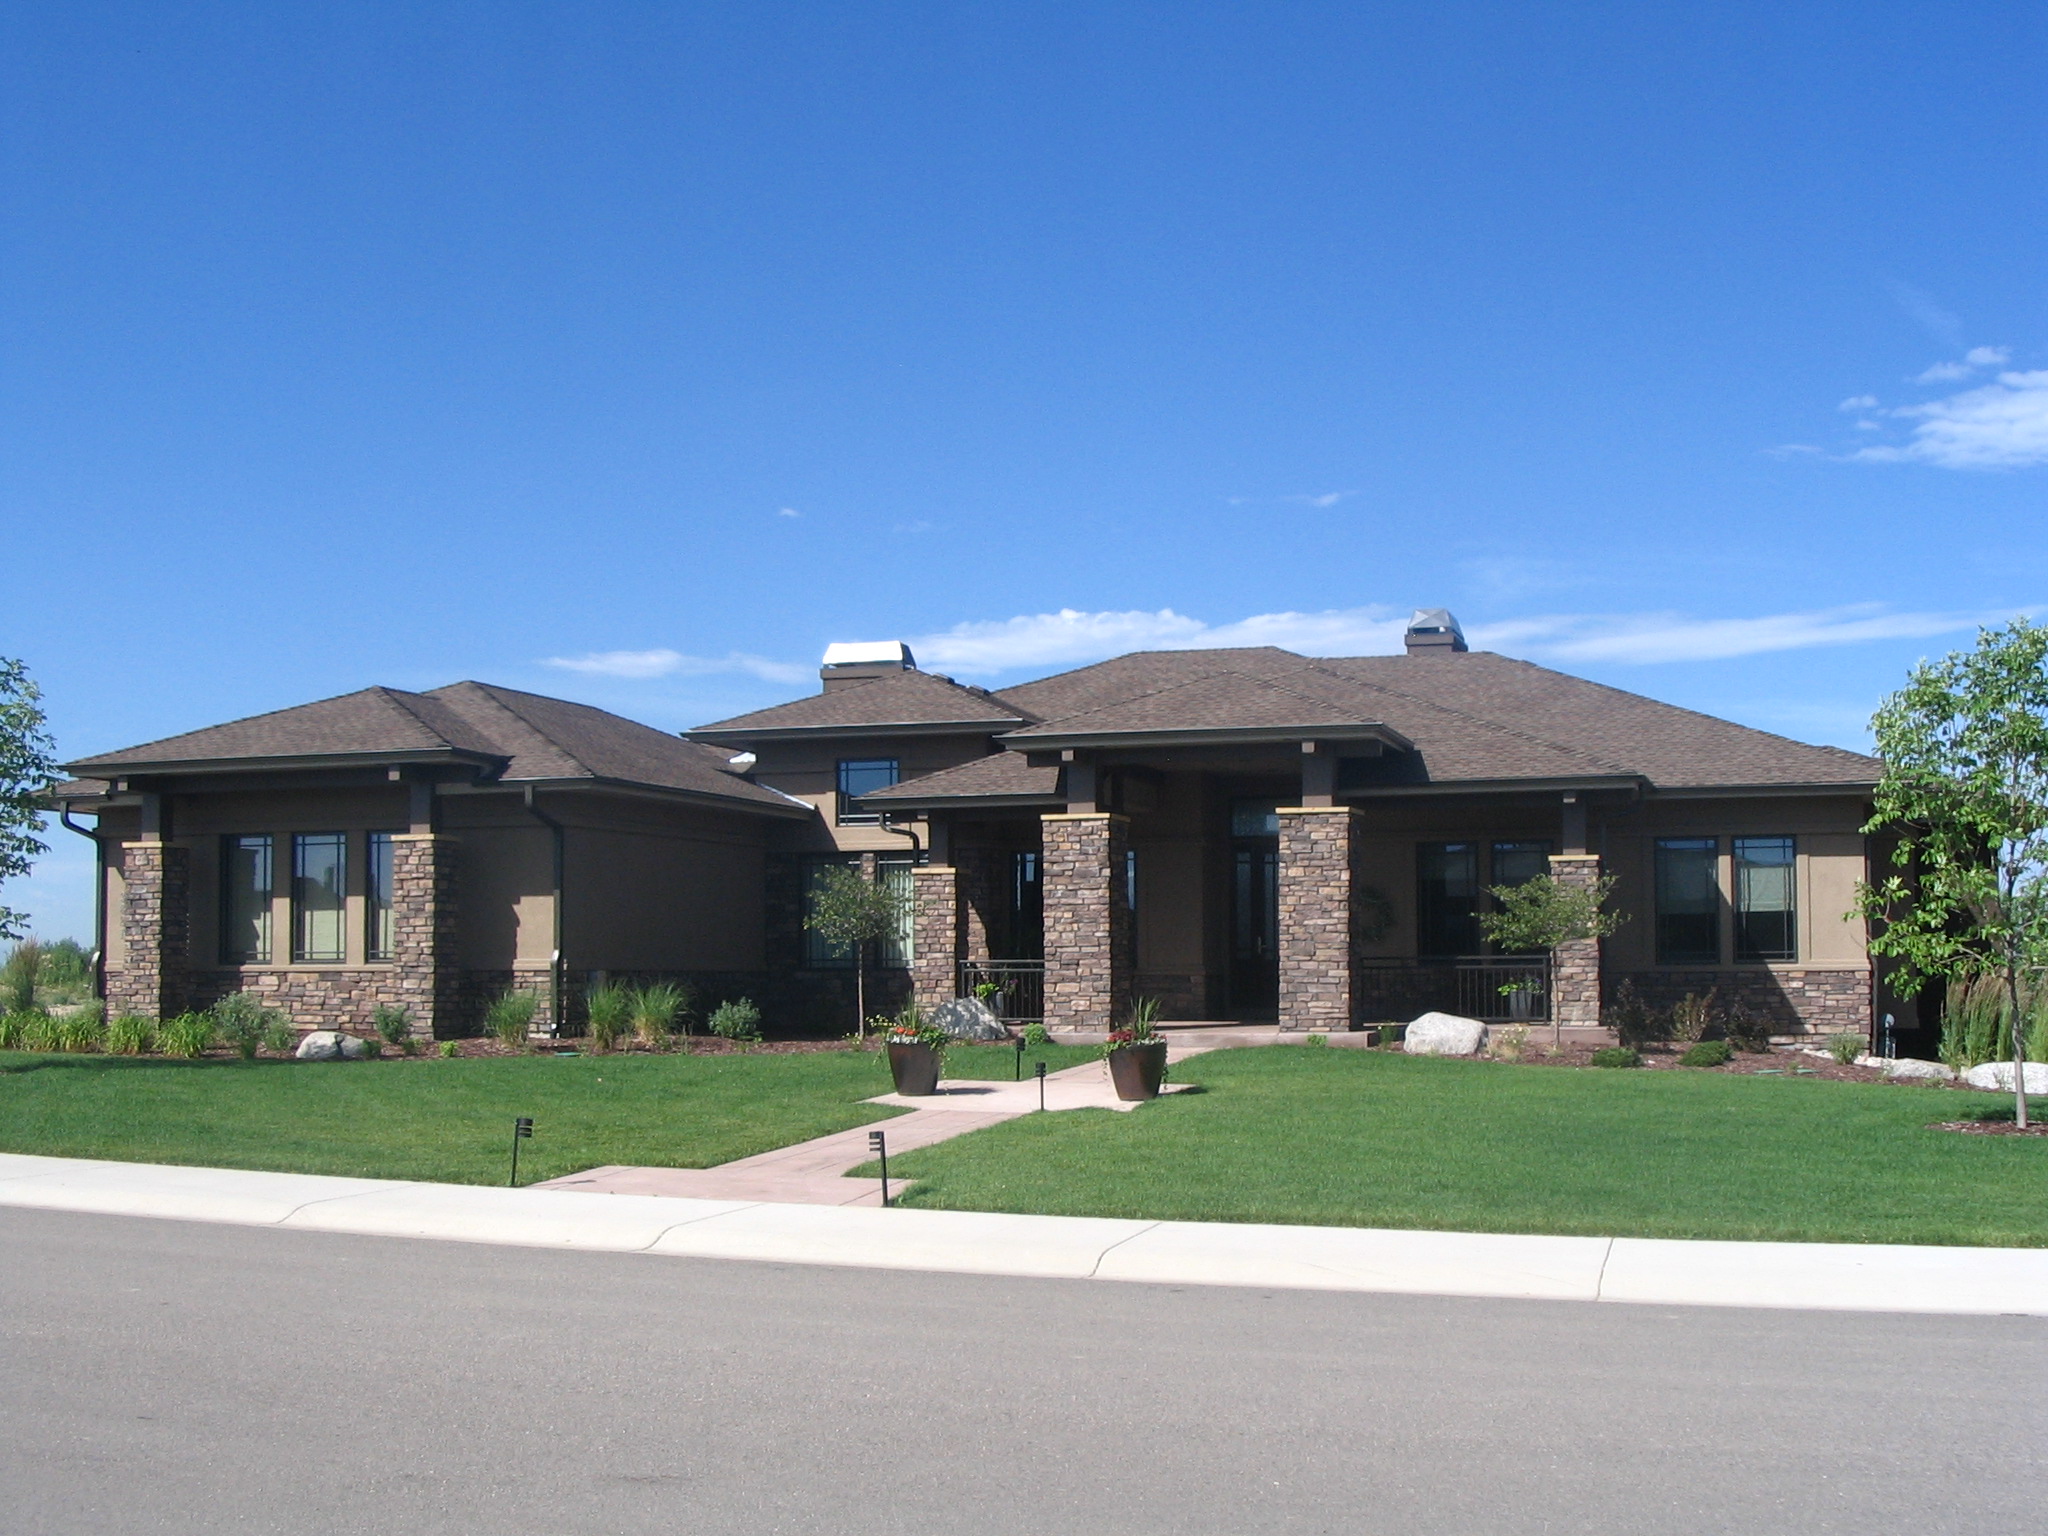 House Plan #161-1058 with Photos: 4 Bdrm, 4,609 Sq Ft Prairie Home